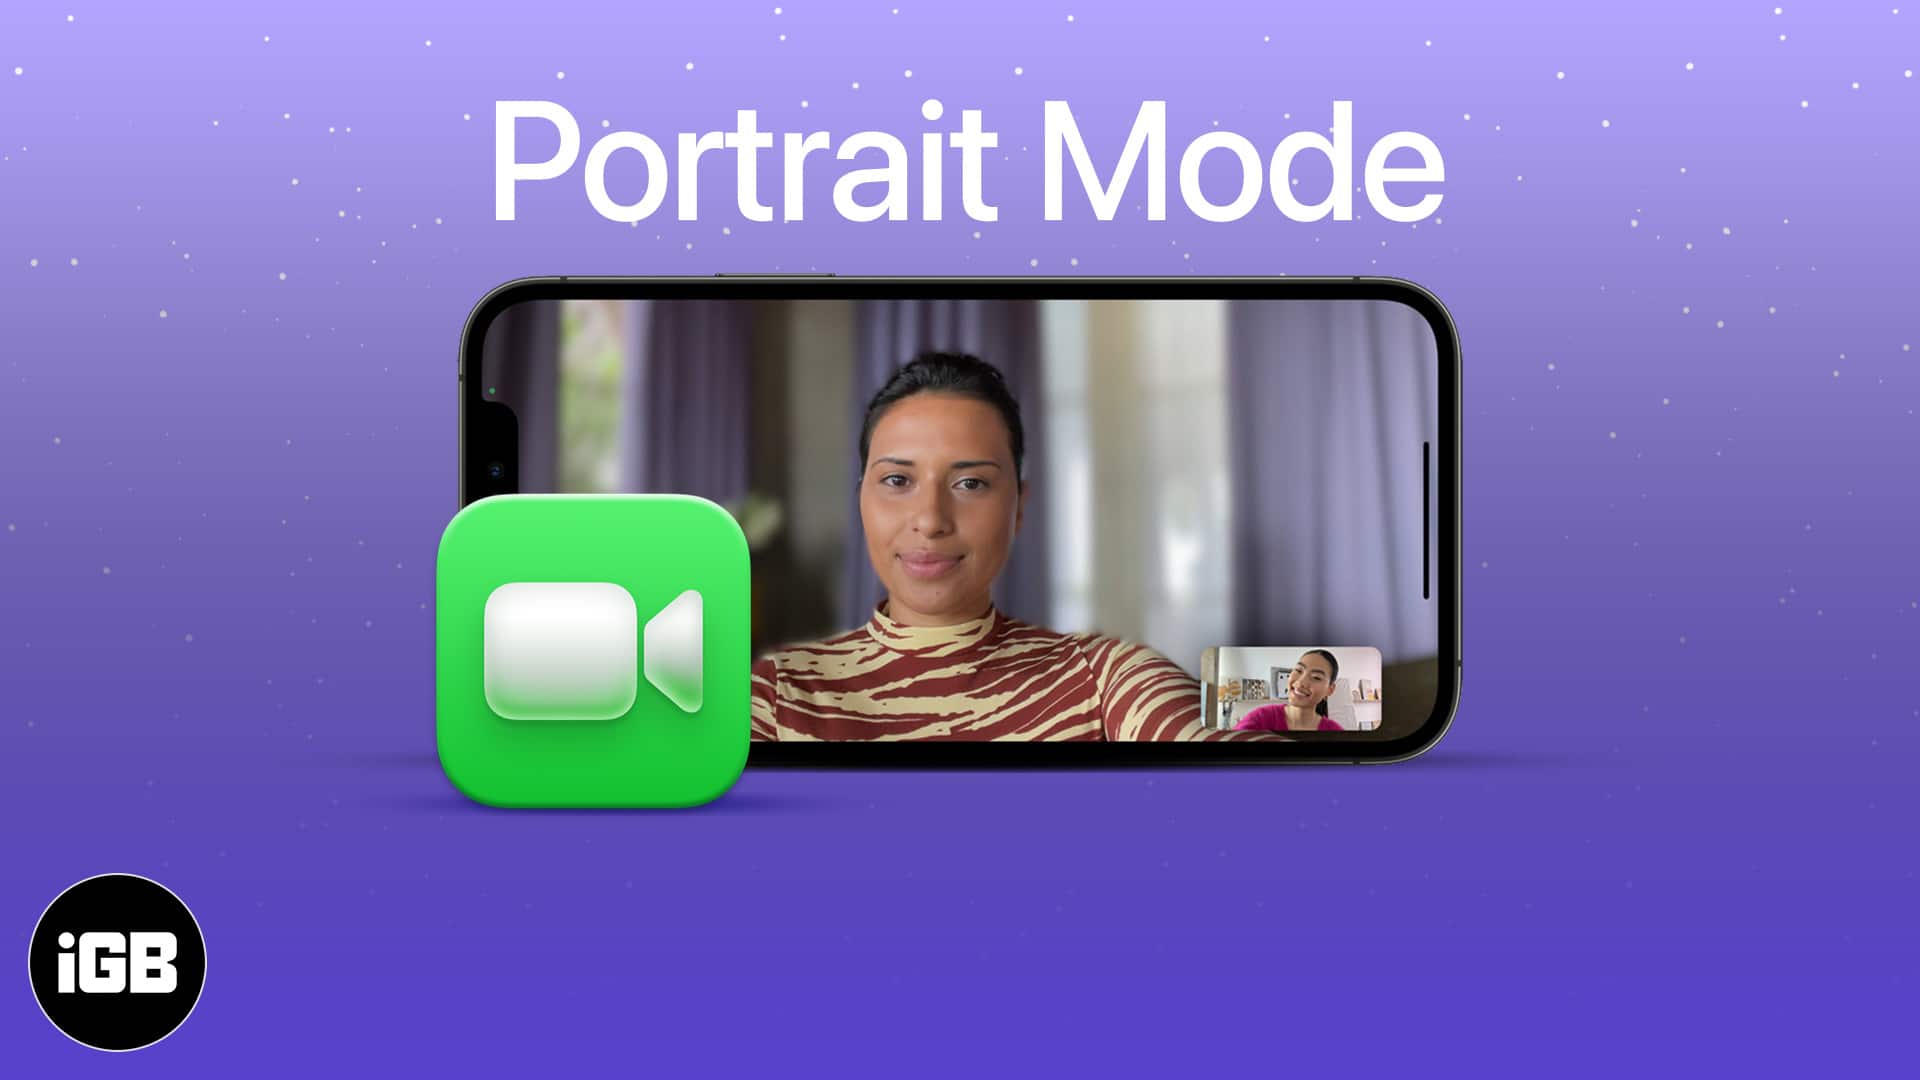 Sử dụng tính năng làm mờ phông nền trong cuộc gọi video FaceTime trên iPhone giúp cho cuộc trò chuyện của bạn trở nên chuyên nghiệp và hiệu quả hơn. Với hình ảnh liên quan, bạn sẽ biết cách sử dụng tính năng hữu ích này.